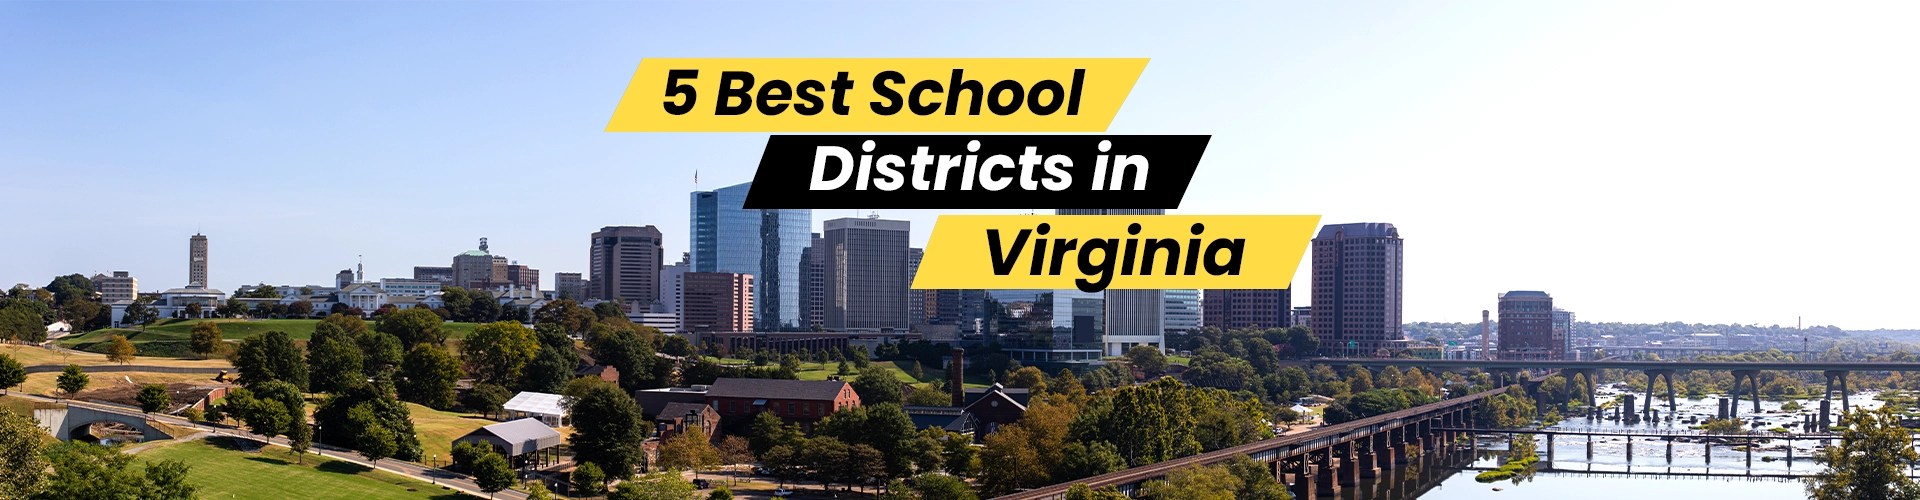 Best School Districts in Virginia